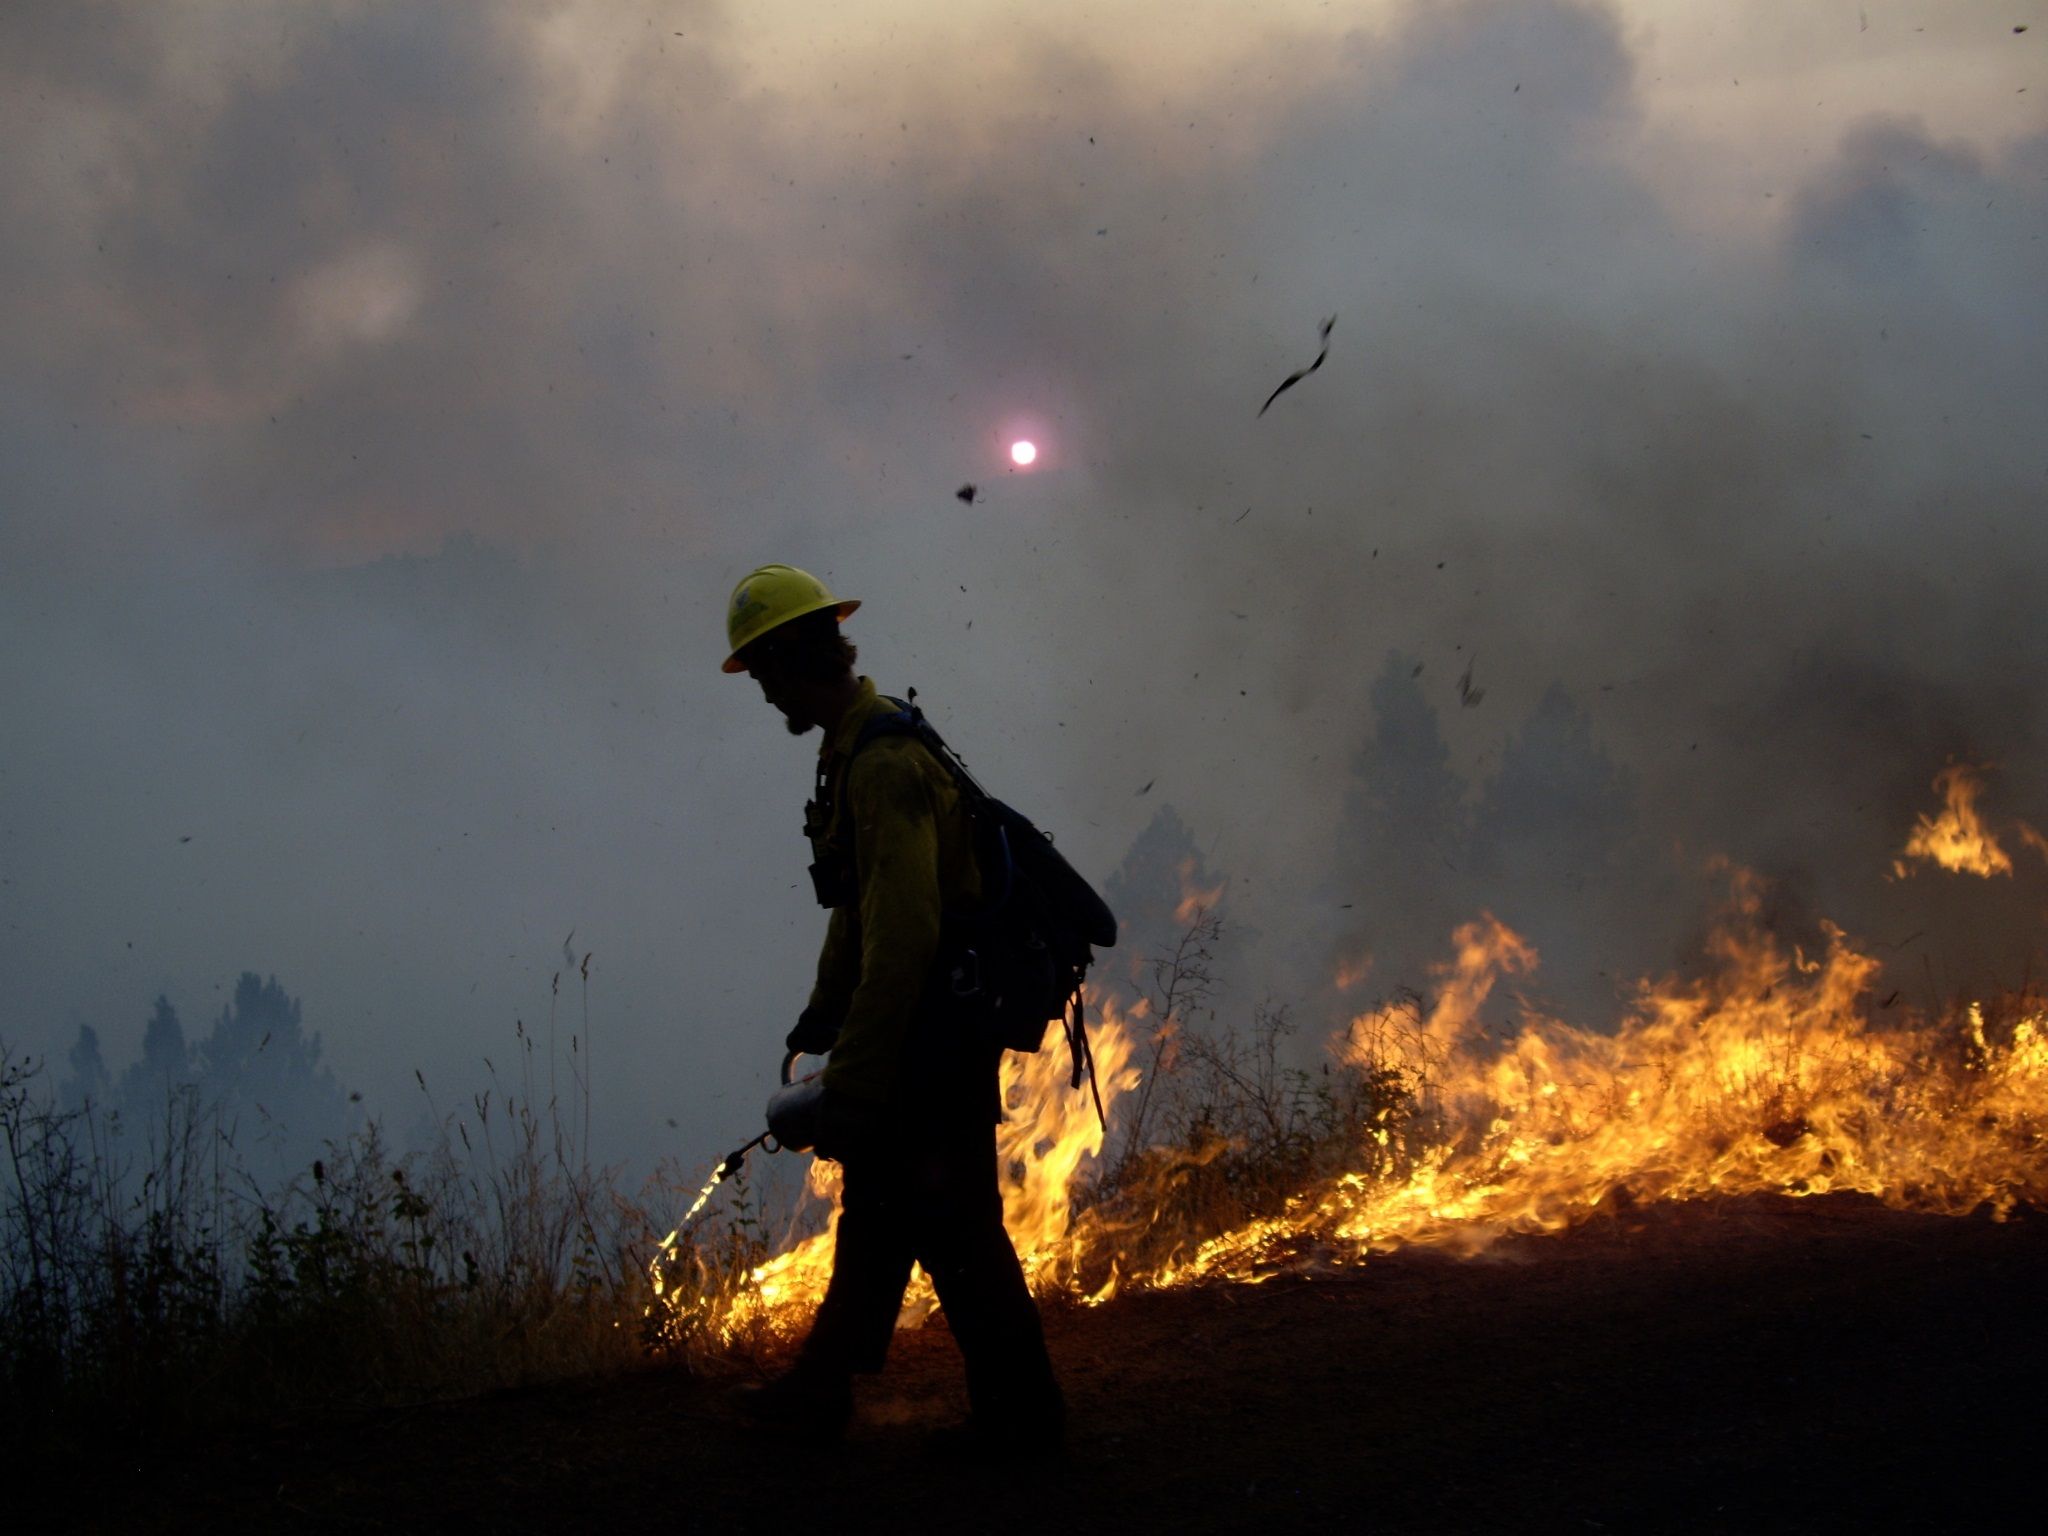 Fire: Prescribed burning of forest debris